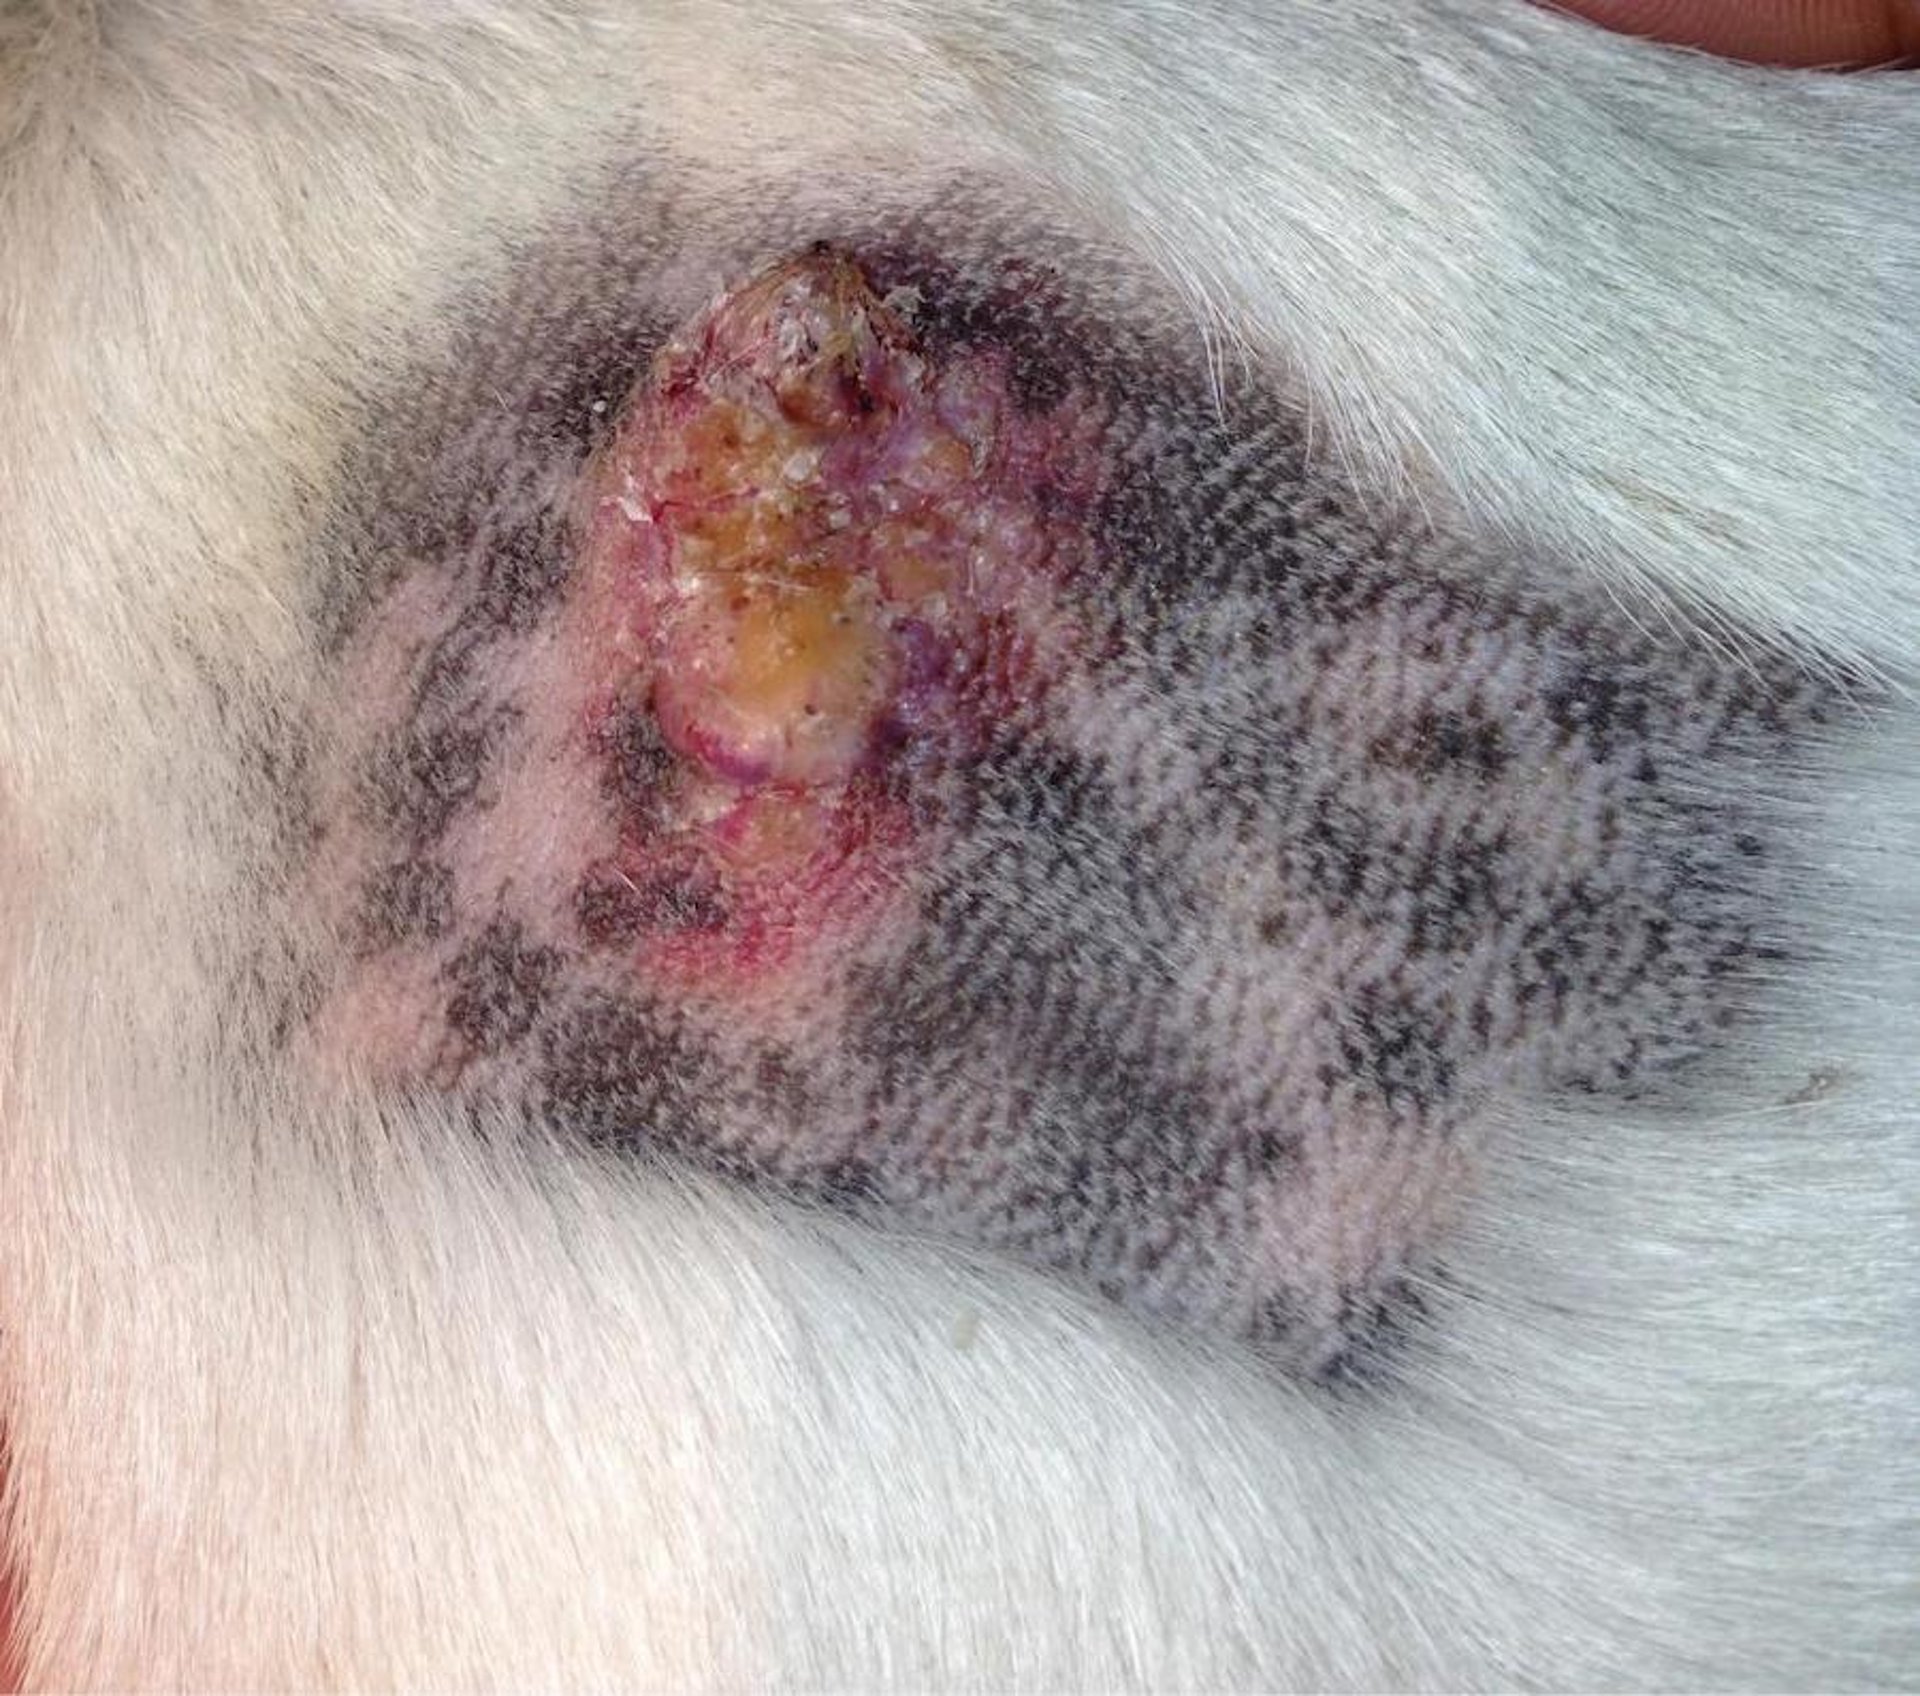 Viral-induced squamous papilloma, shoulder, 12-year-old Bulldog